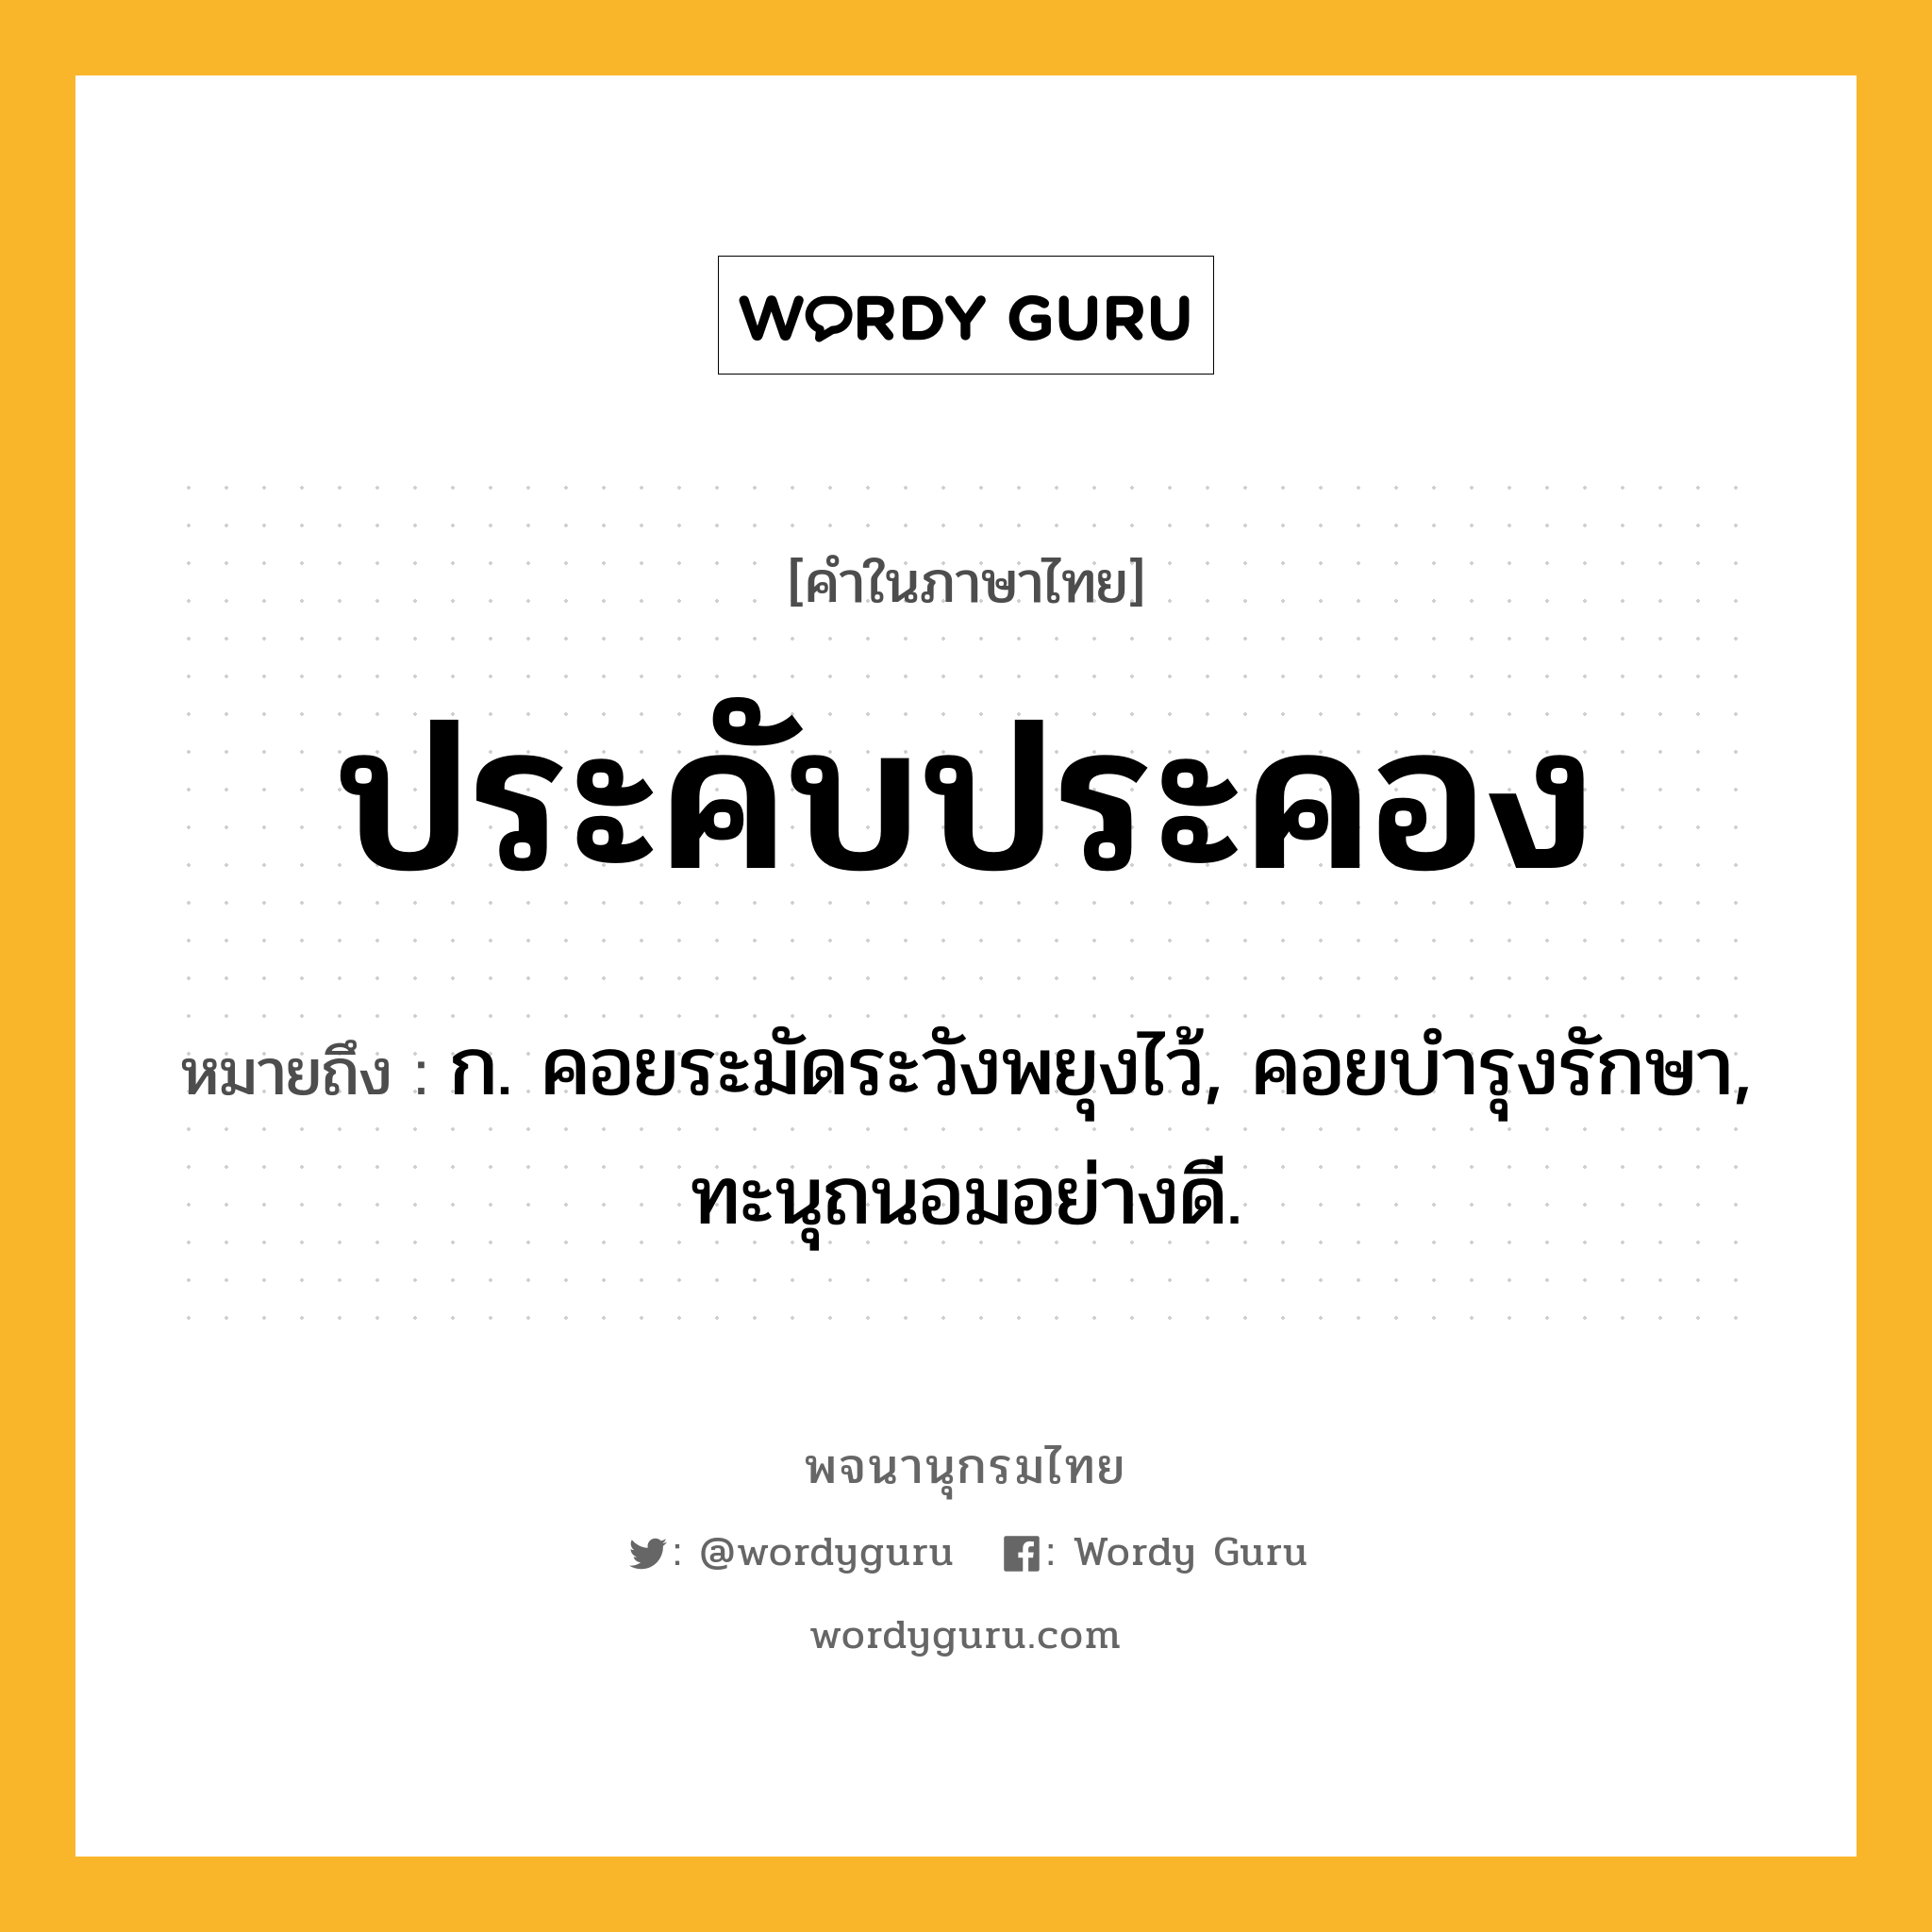 ประคับประคอง ความหมาย หมายถึงอะไร?, คำในภาษาไทย ประคับประคอง หมายถึง ก. คอยระมัดระวังพยุงไว้, คอยบํารุงรักษา, ทะนุถนอมอย่างดี.